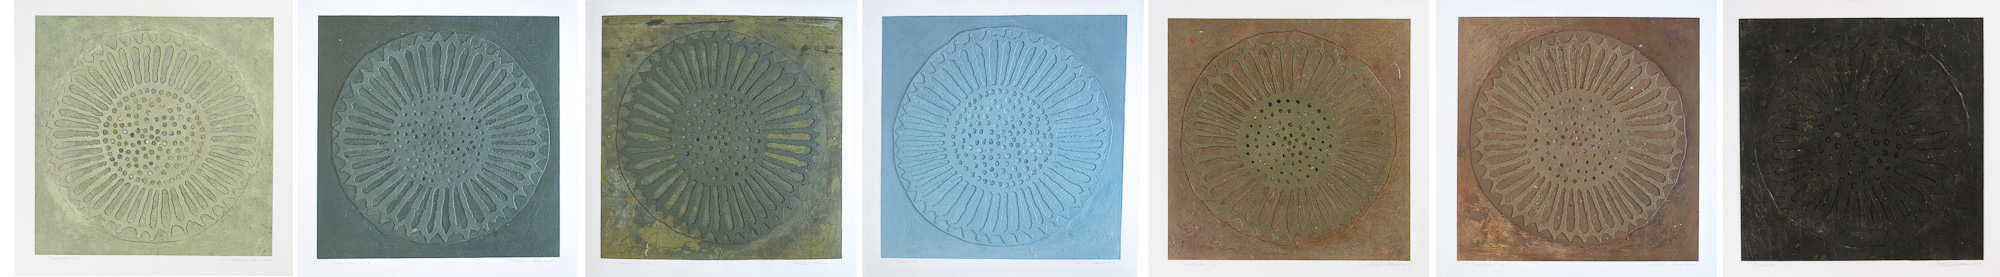 Coquillage, no 1 à 7, 2009 - 2013. Acrylique sur papier fort, 57 x 399 cm.